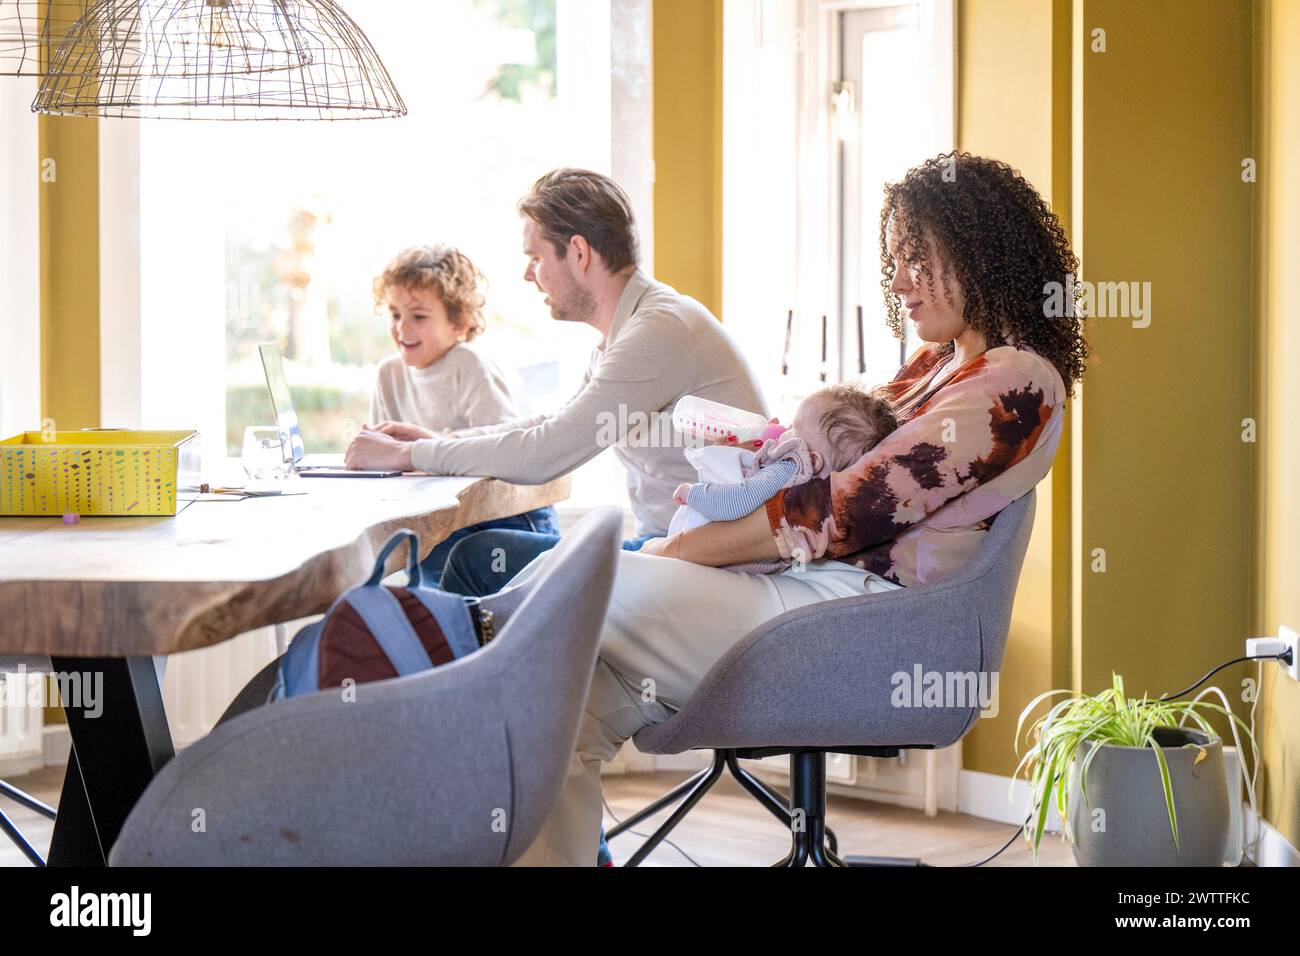 Ein gemütlicher Familienmoment zu Hause mit einer stillenden Mutter und einem Vater, der einem anderen Kind bei den Hausaufgaben hilft. Stockfoto